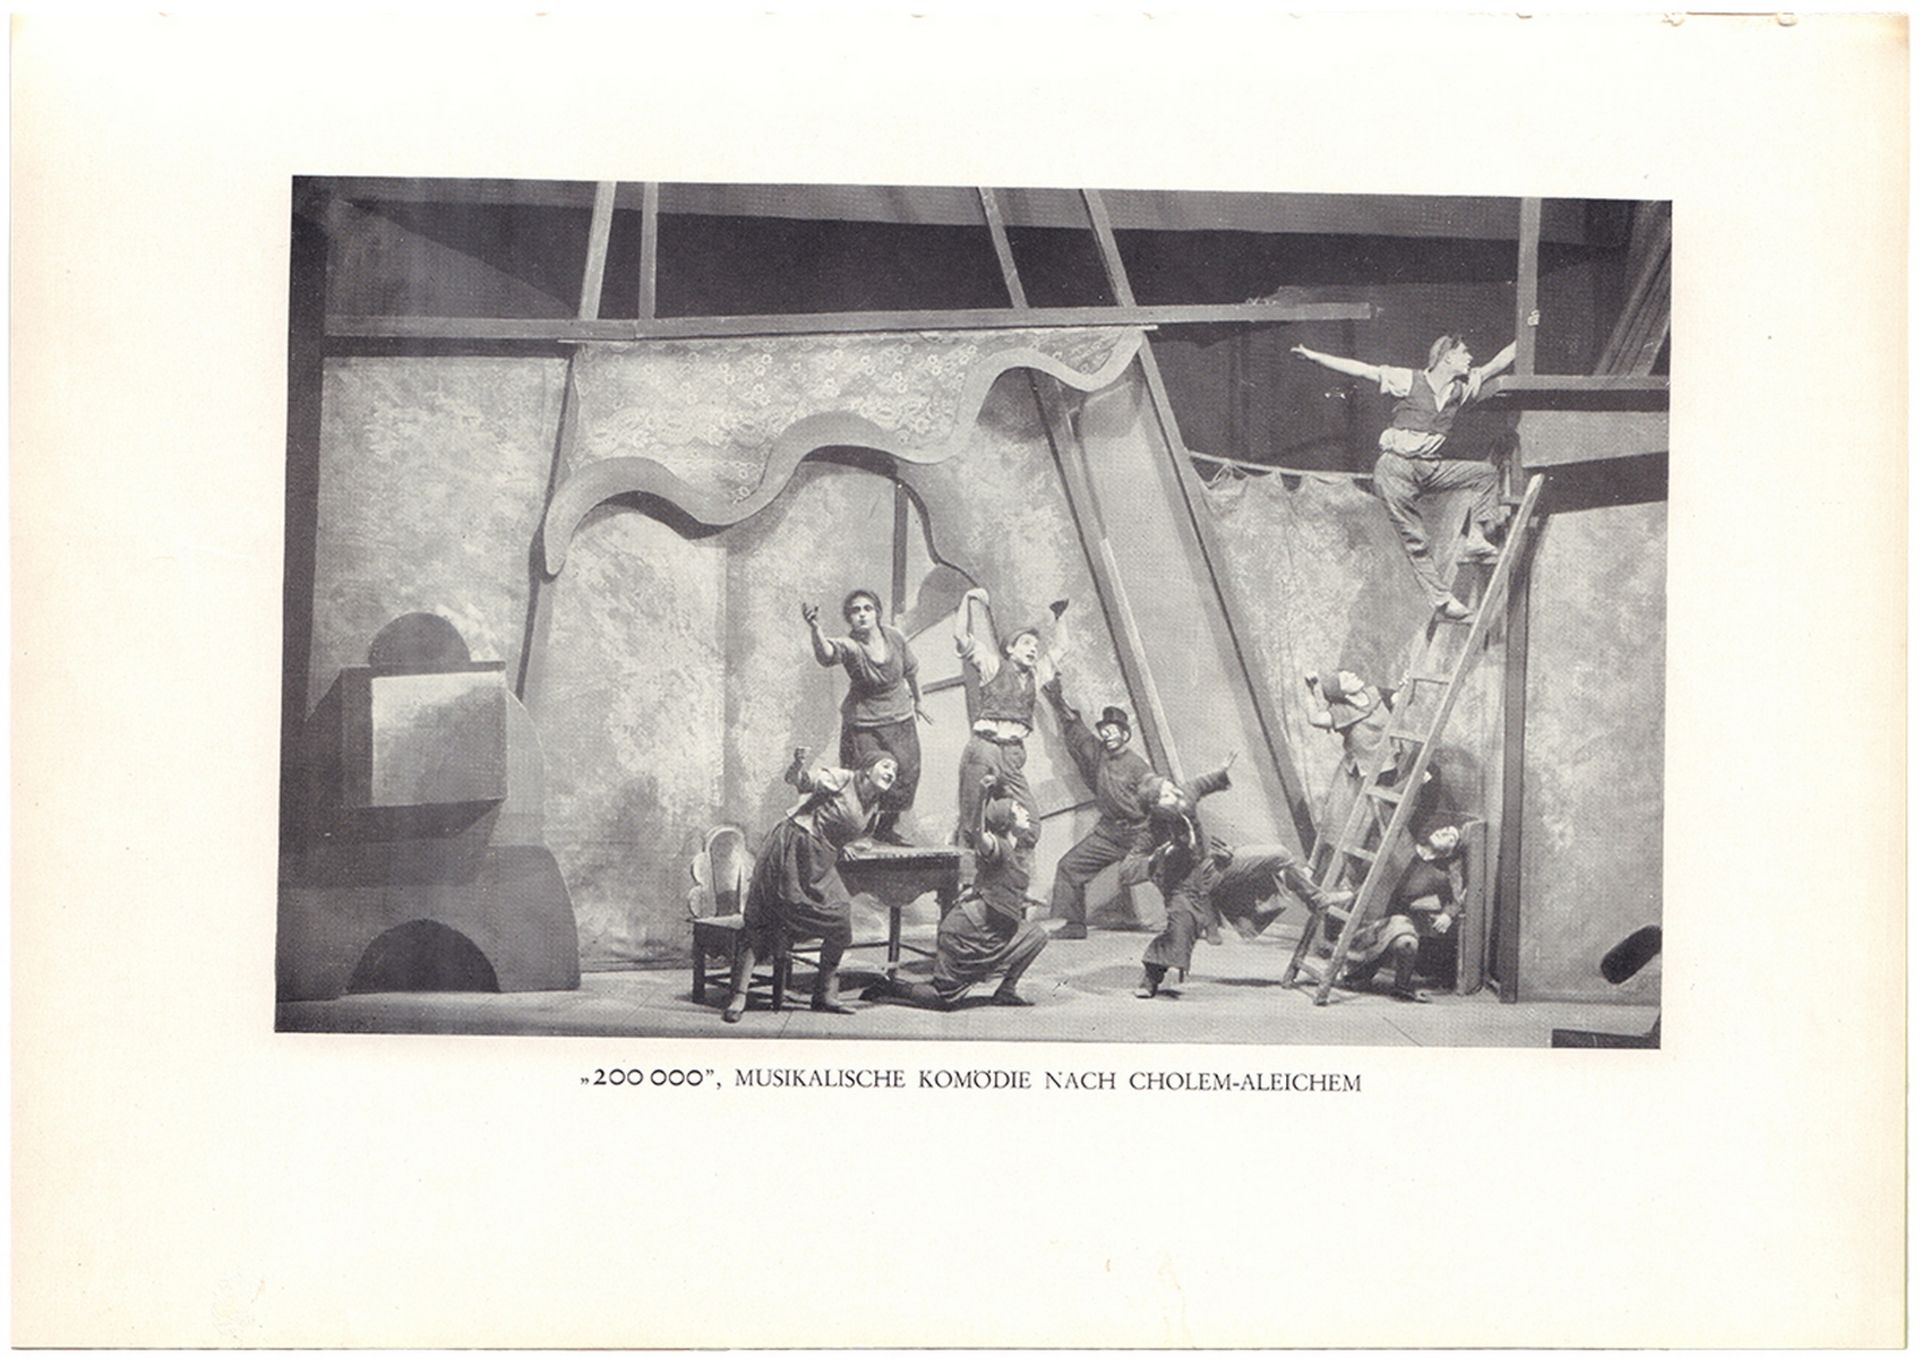 [Soviet art]. Das Moskauer j?dische akademische Theater. - Berlin: Die Schmiede, 1928. - 22, [2] pp. - Bild 3 aus 4